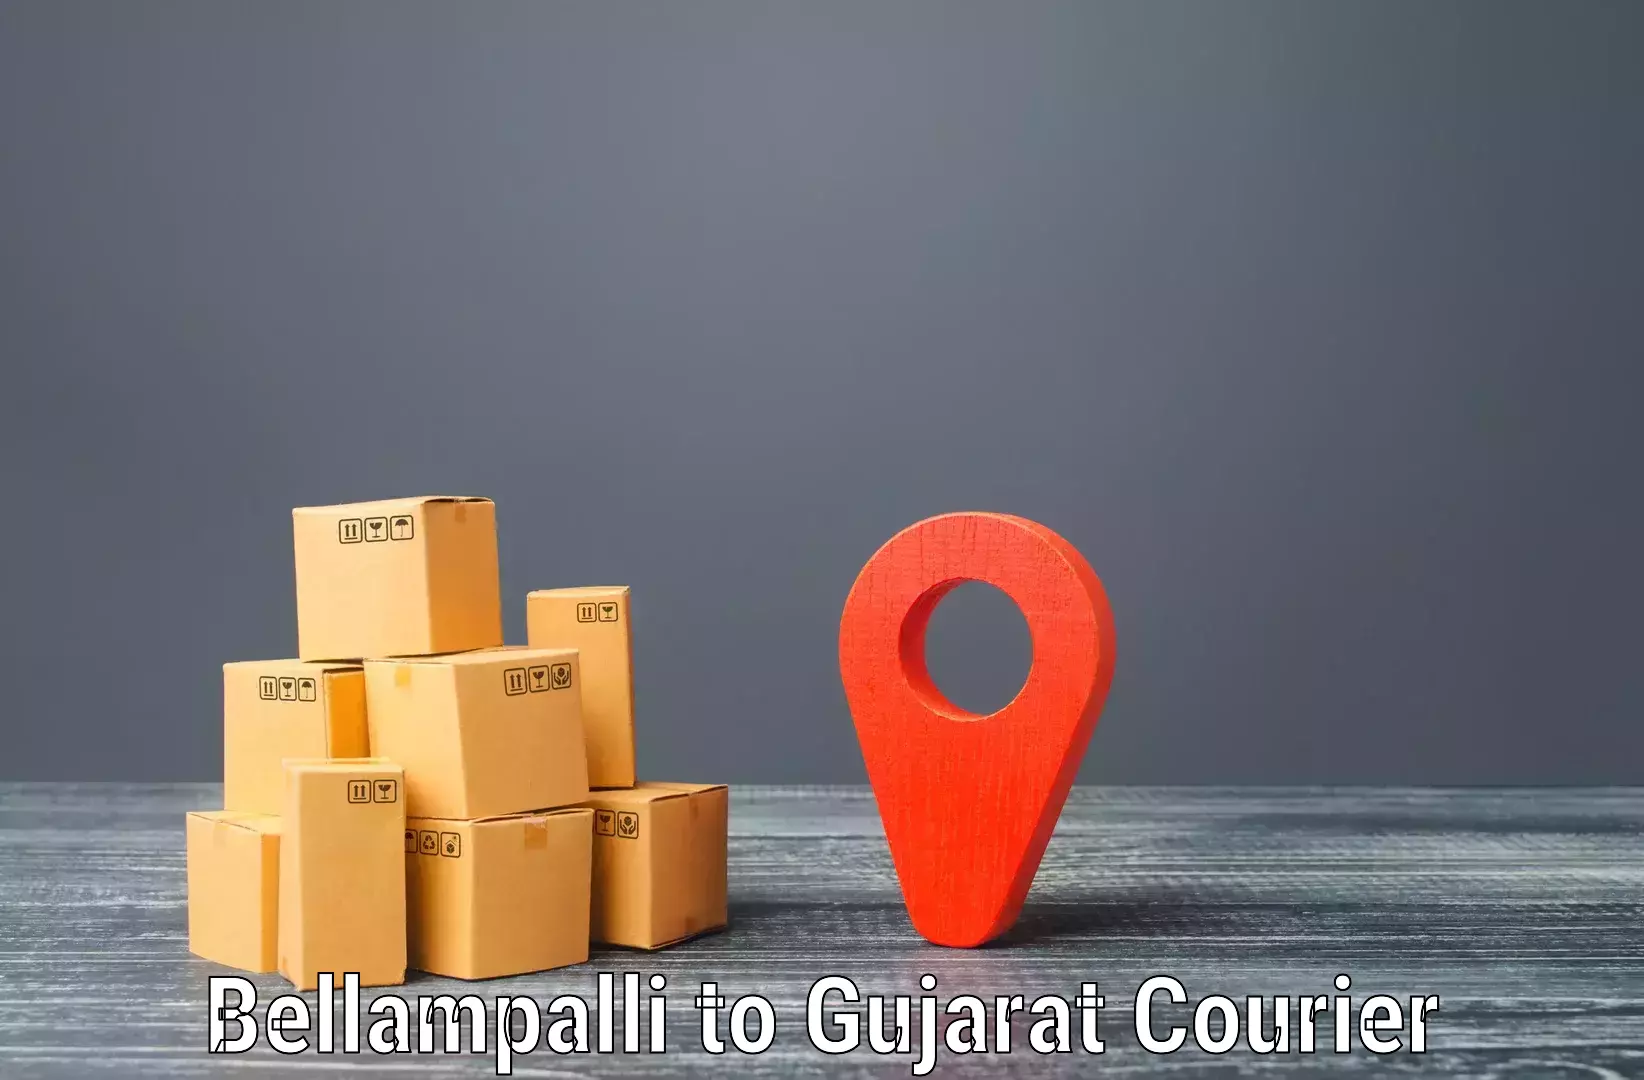 Courier service comparison Bellampalli to Palitana